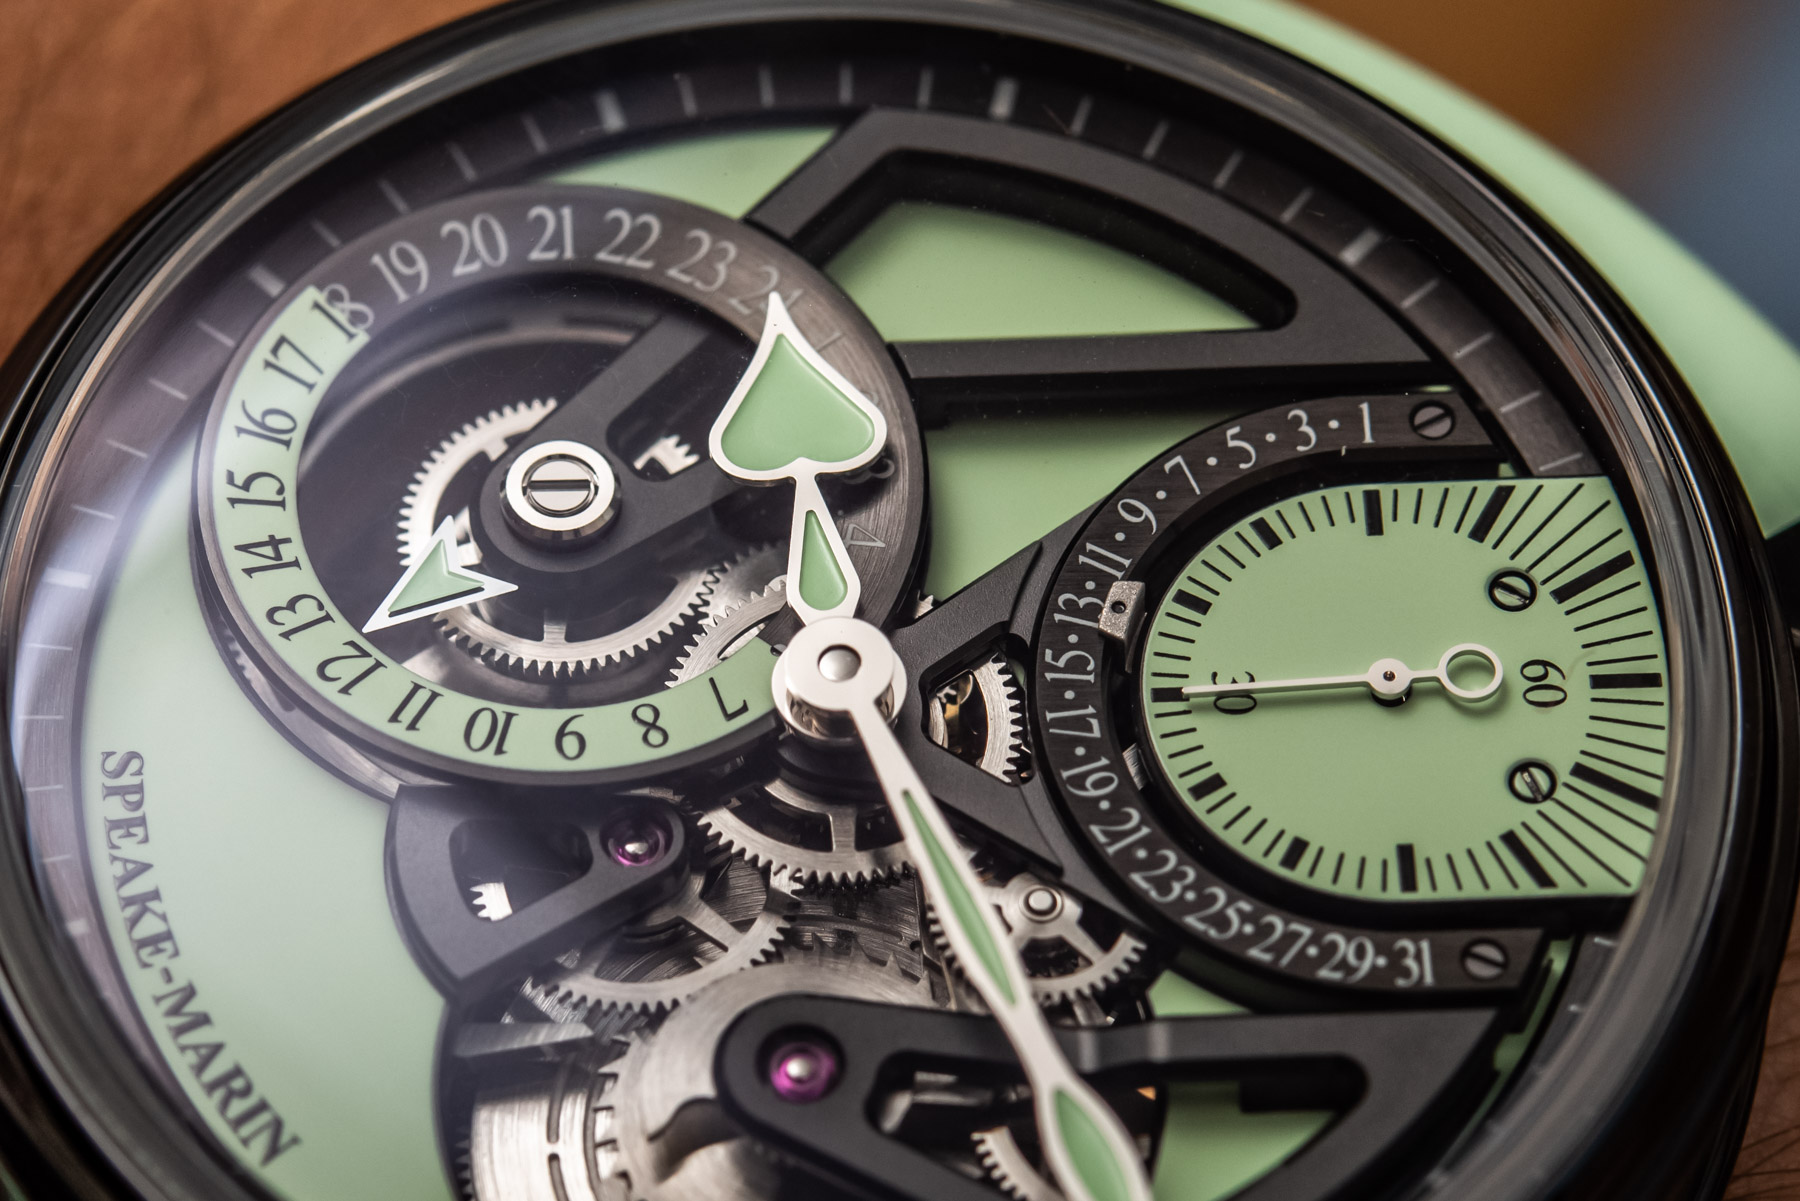 Испытание на руке: ажурные часы с двойным временем Speake-Marin One&Two